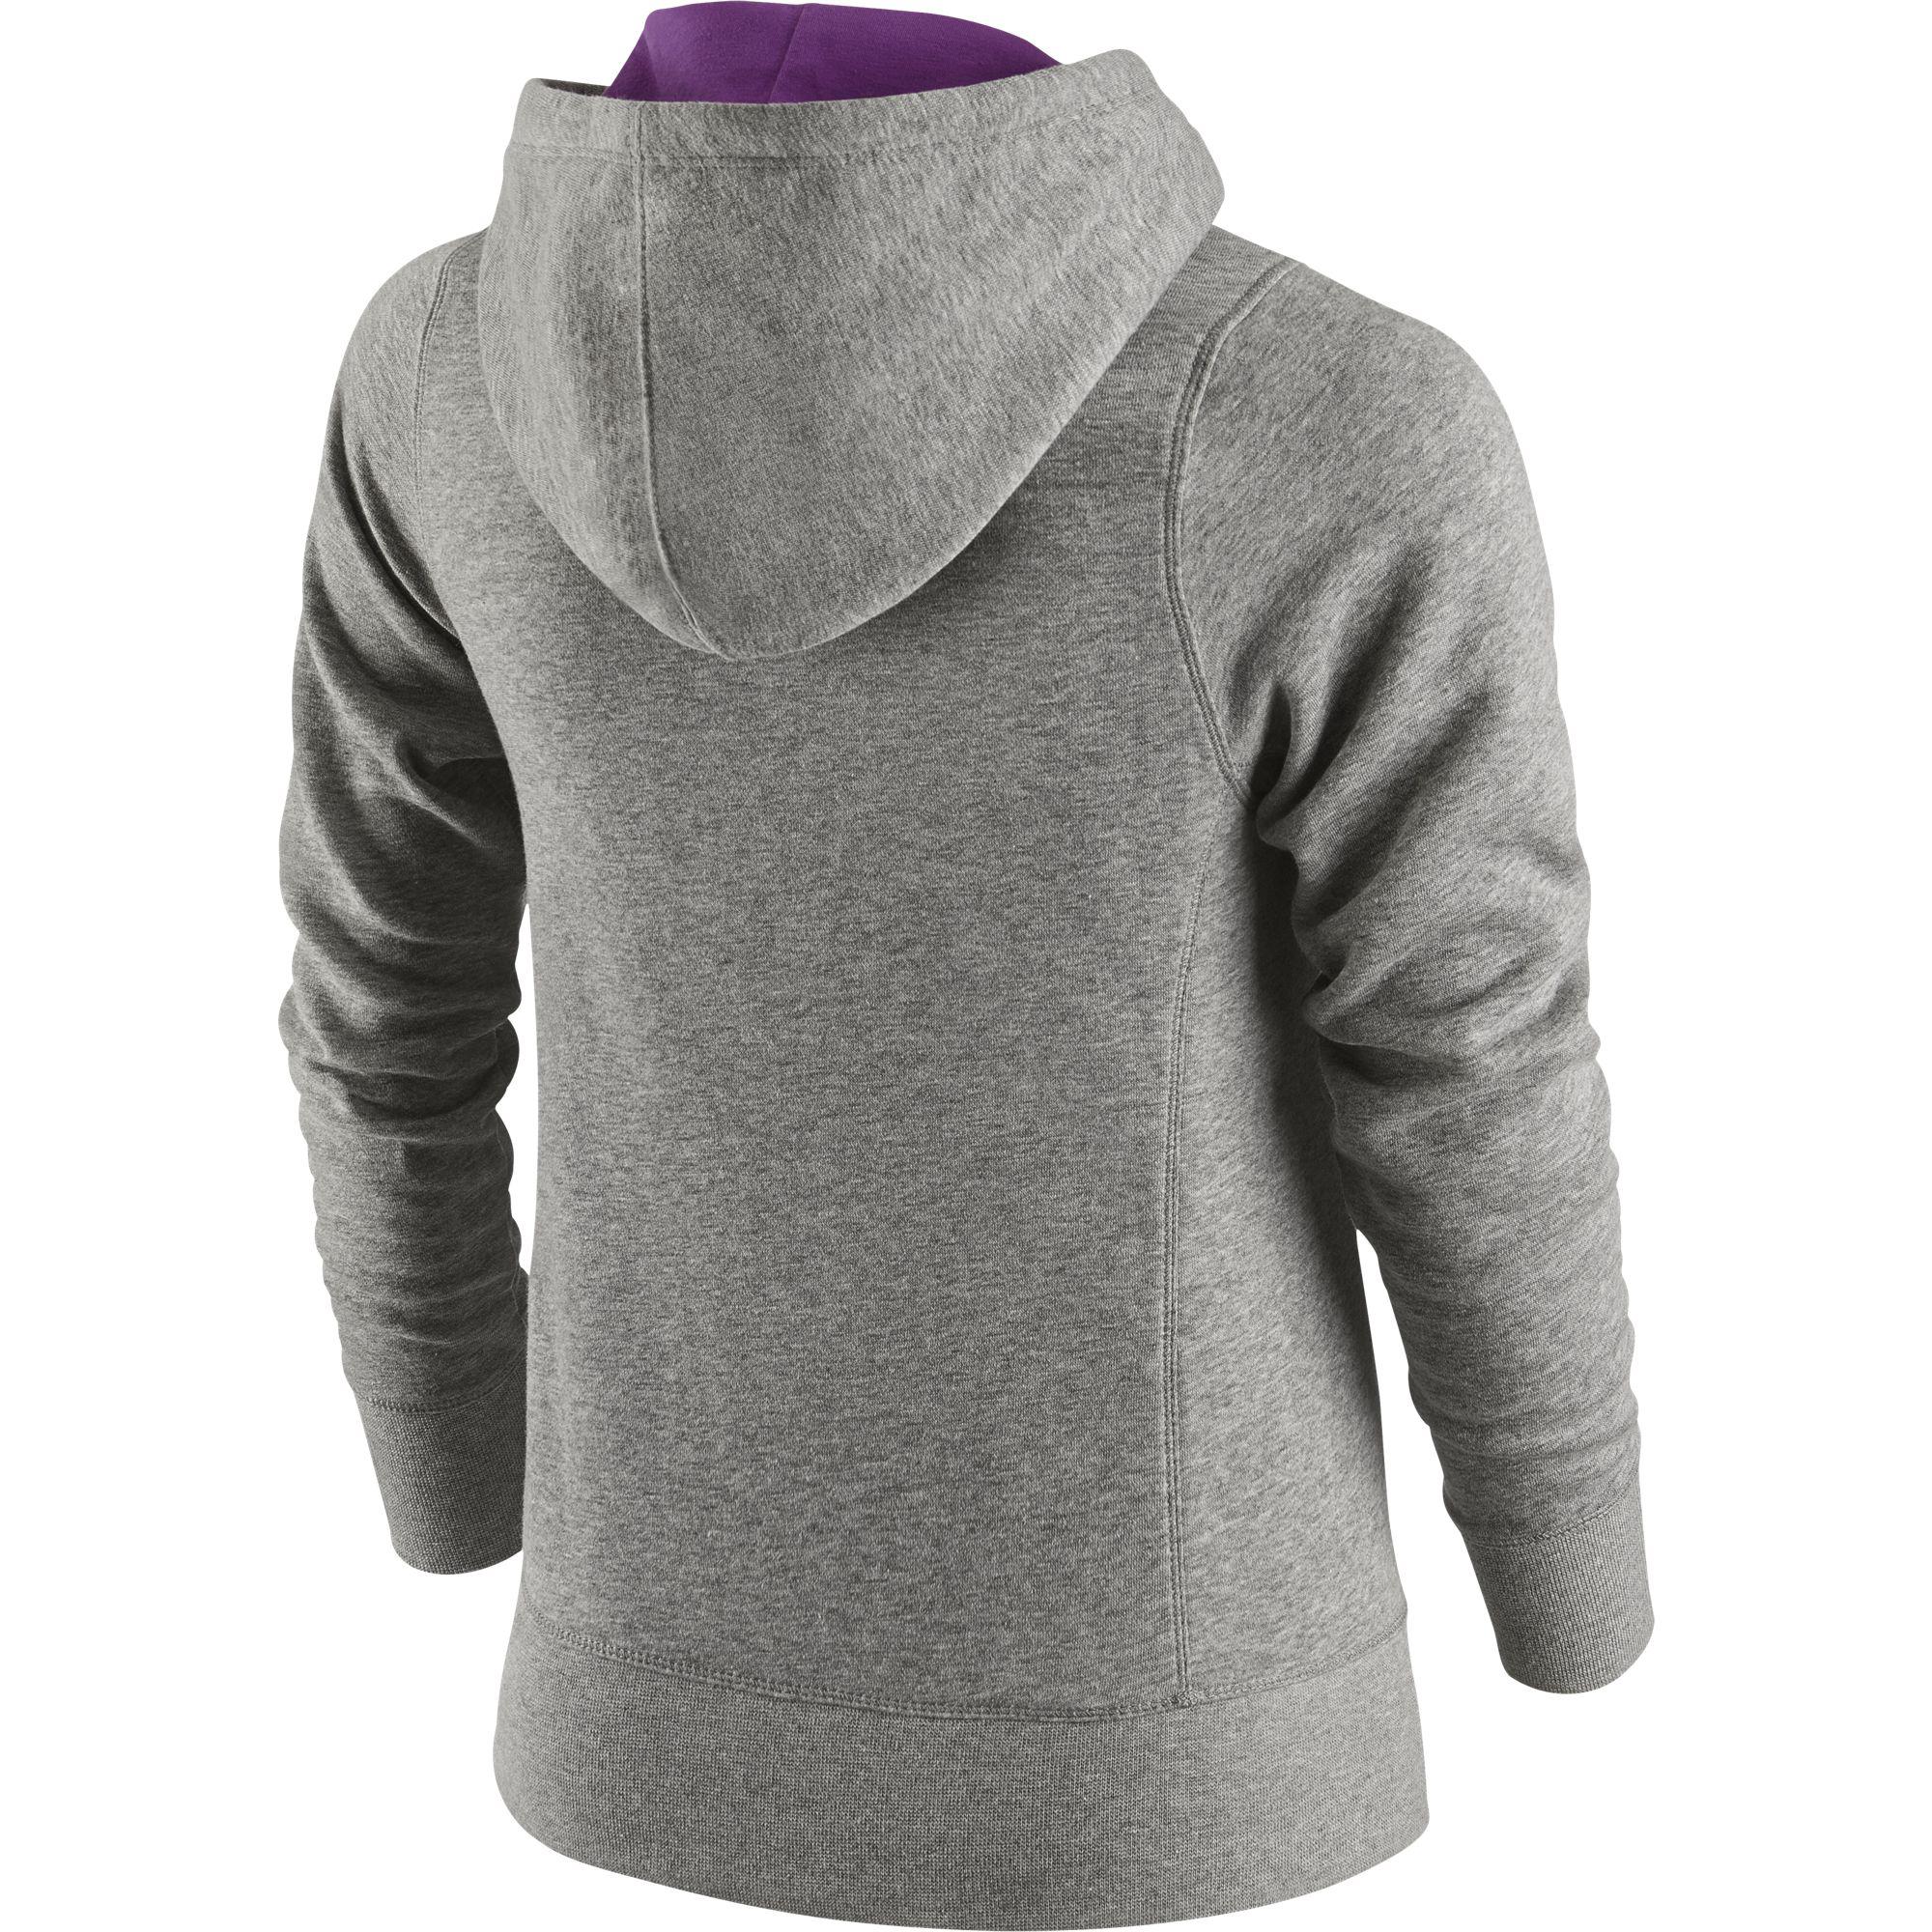 Nike Girls YA76 Brushed Fleece Over-the-head Hoodie - Grey/Purple ...